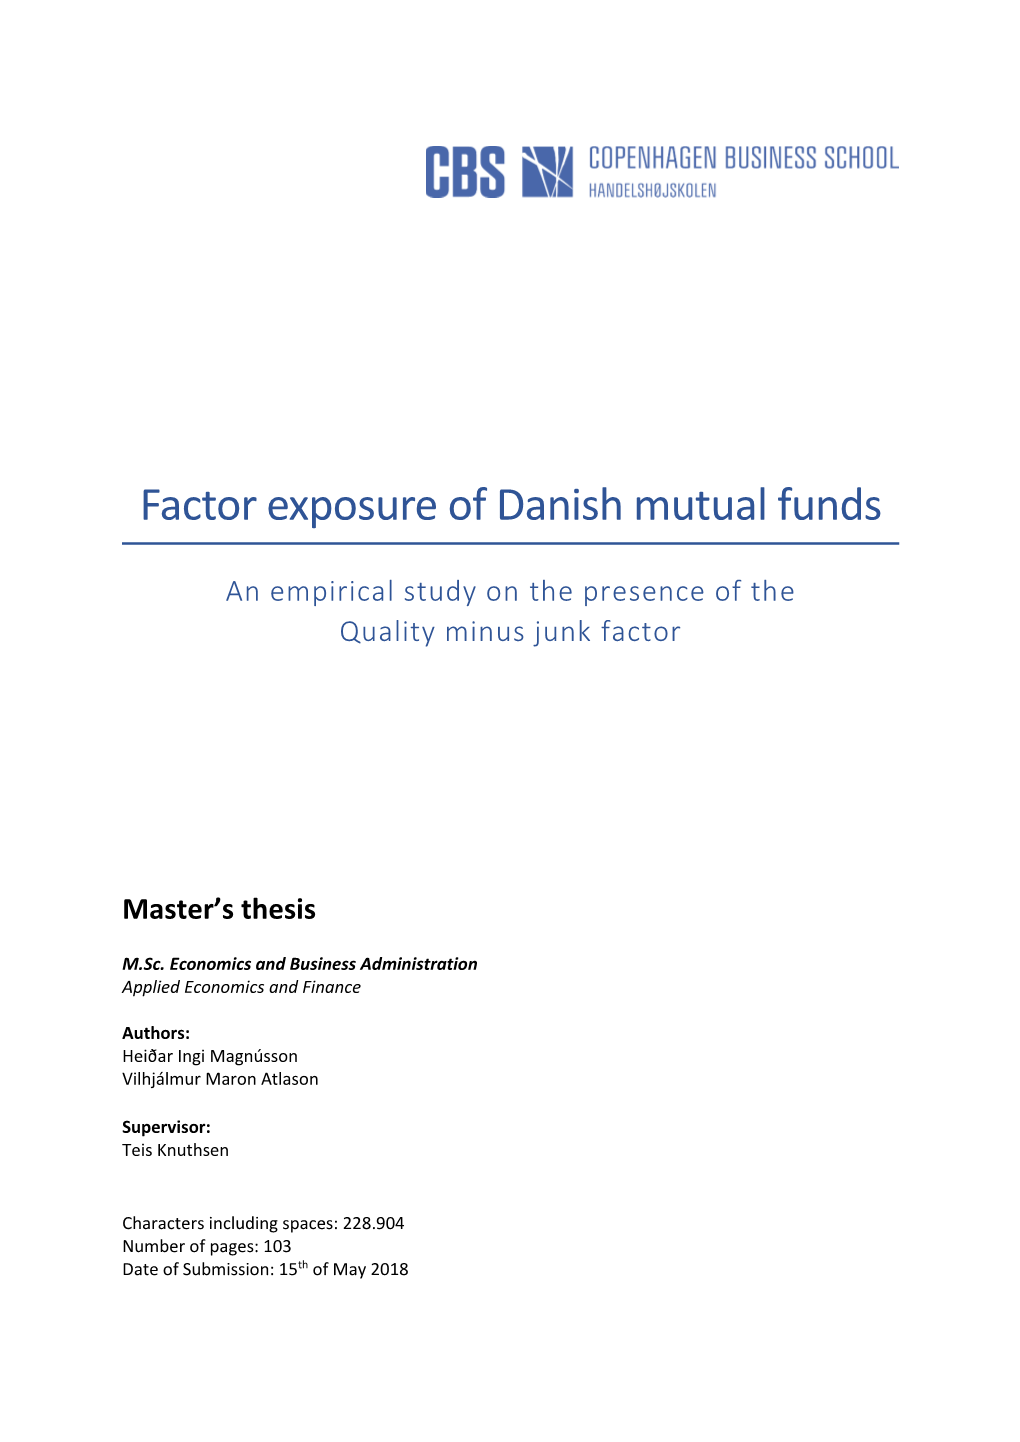 Factor Exposure of Danish Mutual Funds